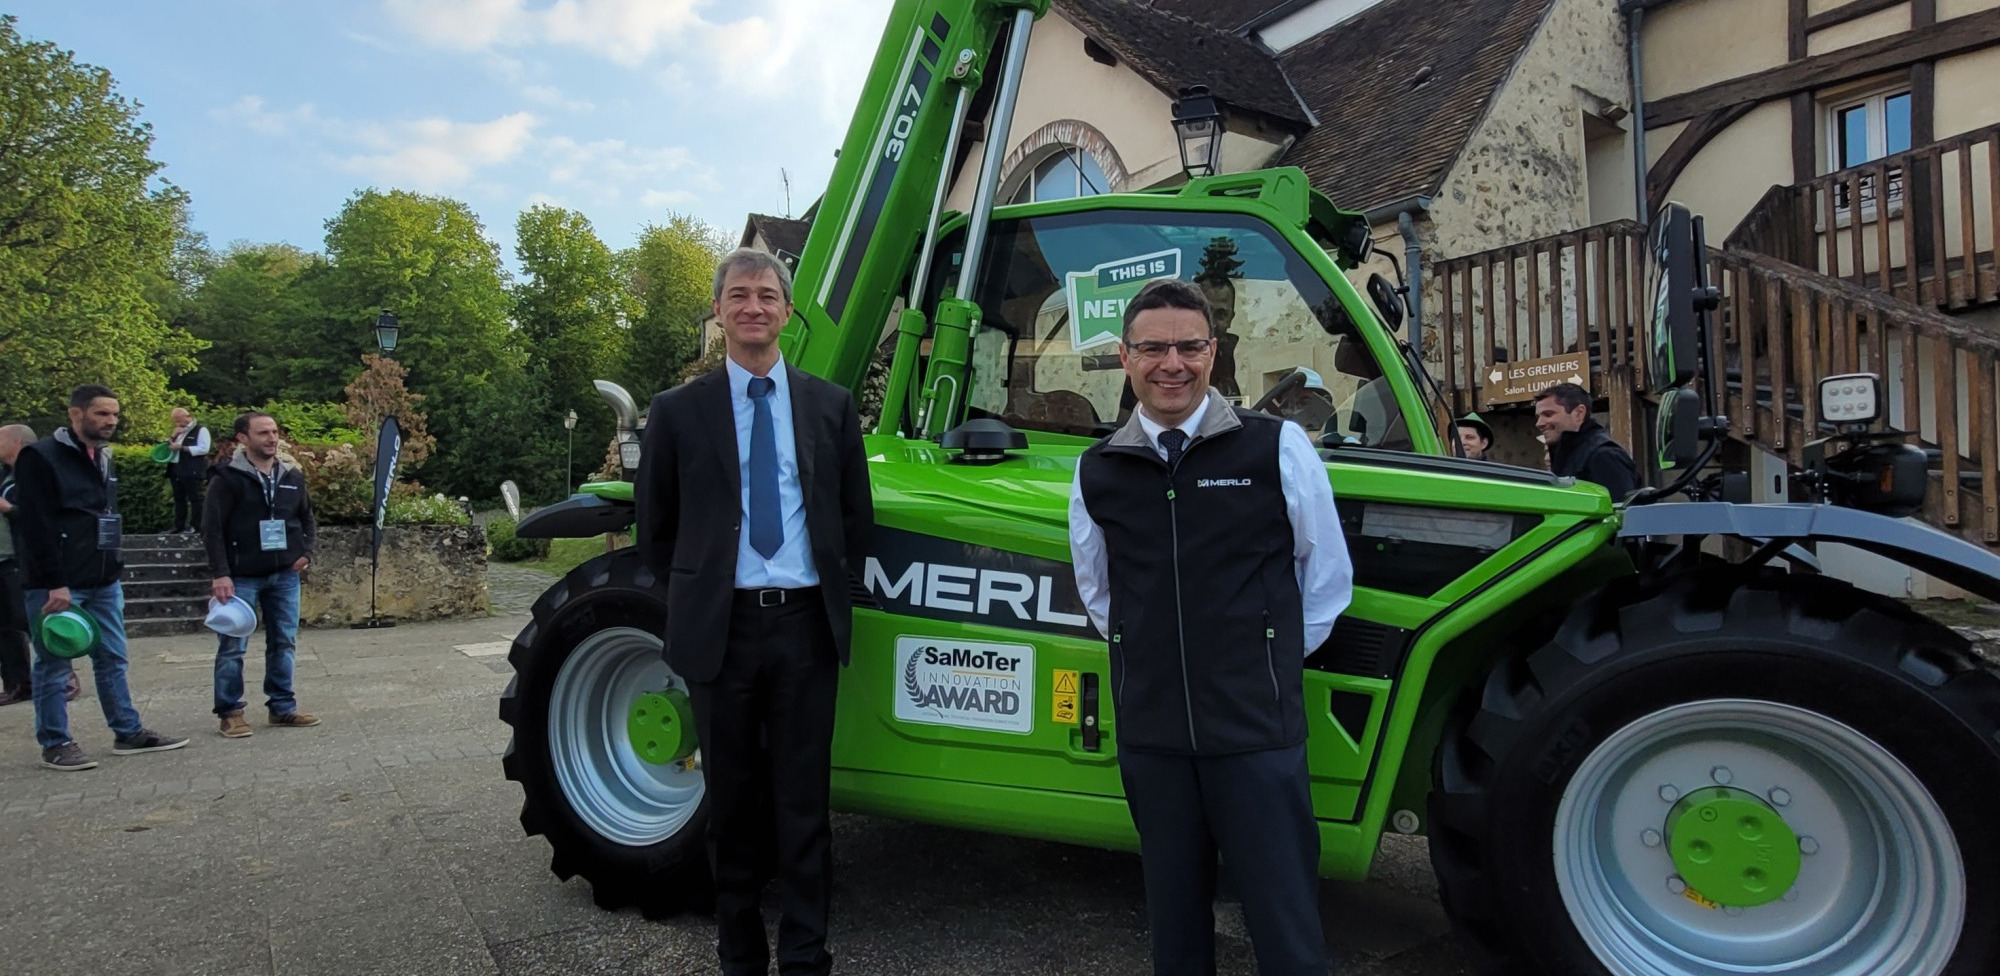 Paolo Merlo, président du groupe Merlo et Laurent Ménard, directeur commercial chez Merlo France : « le réseau est la clé de voûte de notre organisation ». 